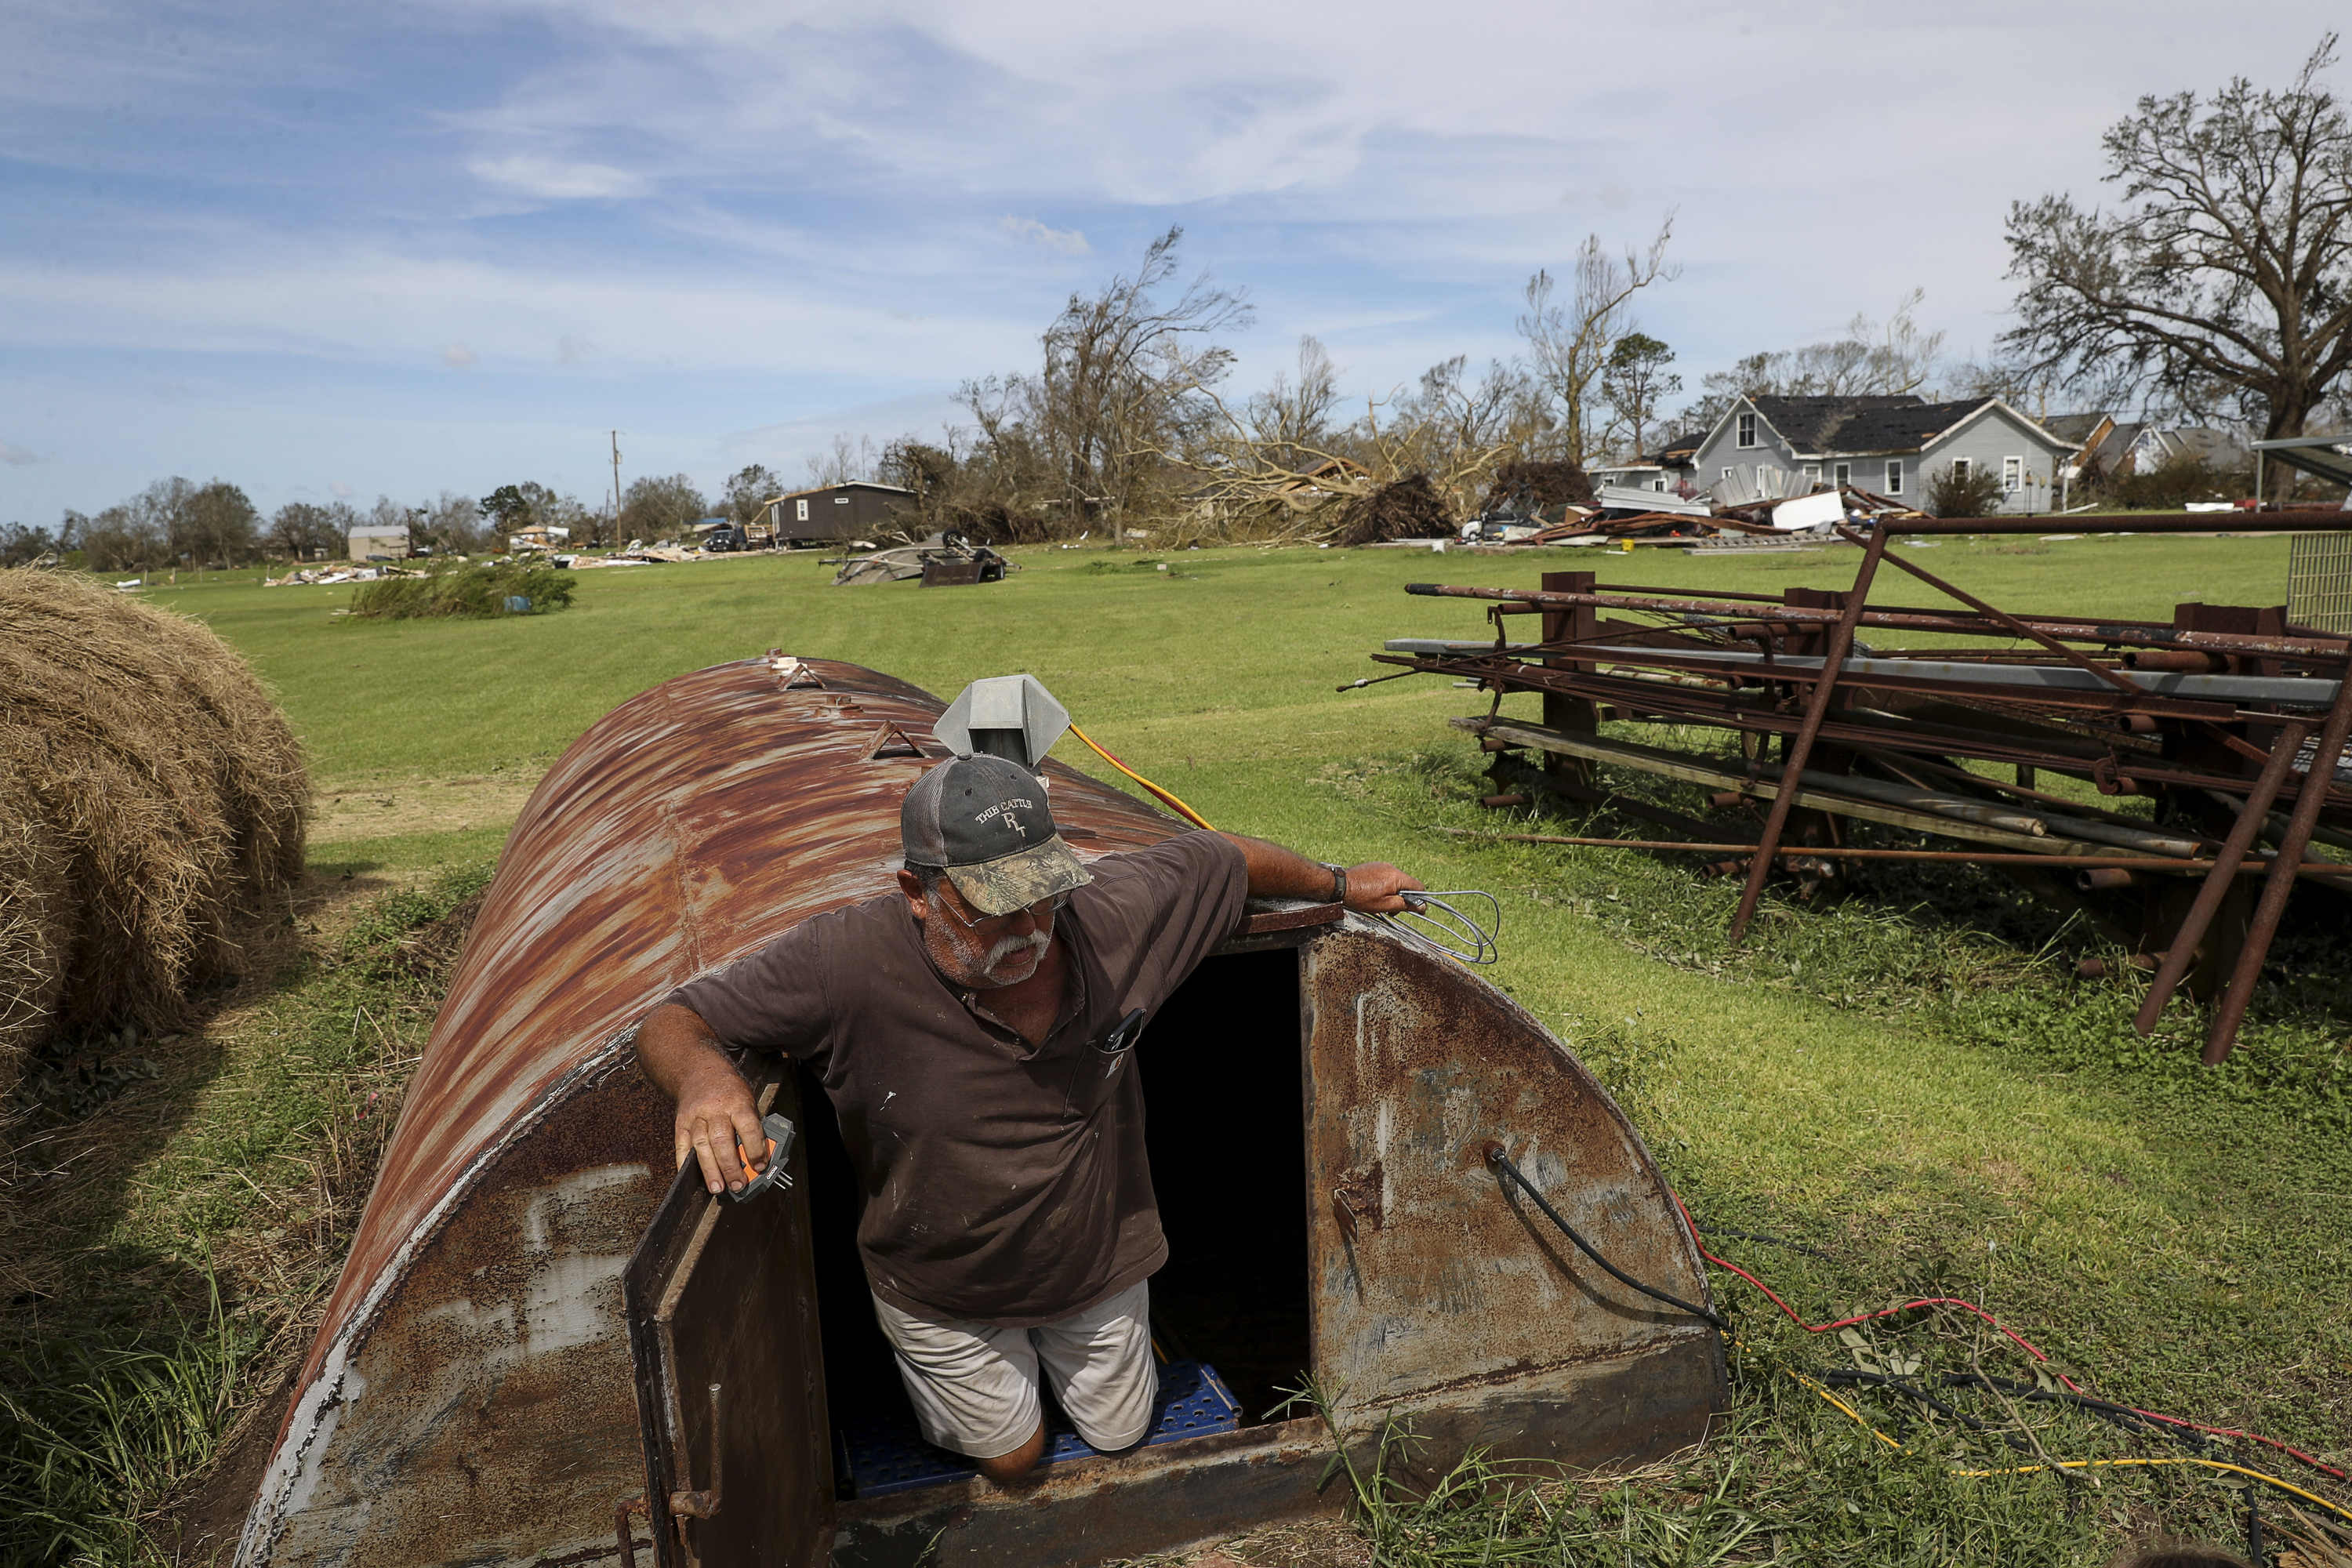 يخرج ريكي تيبادو من مأوى للعواصف حيث لجأ مع ستة آخرين